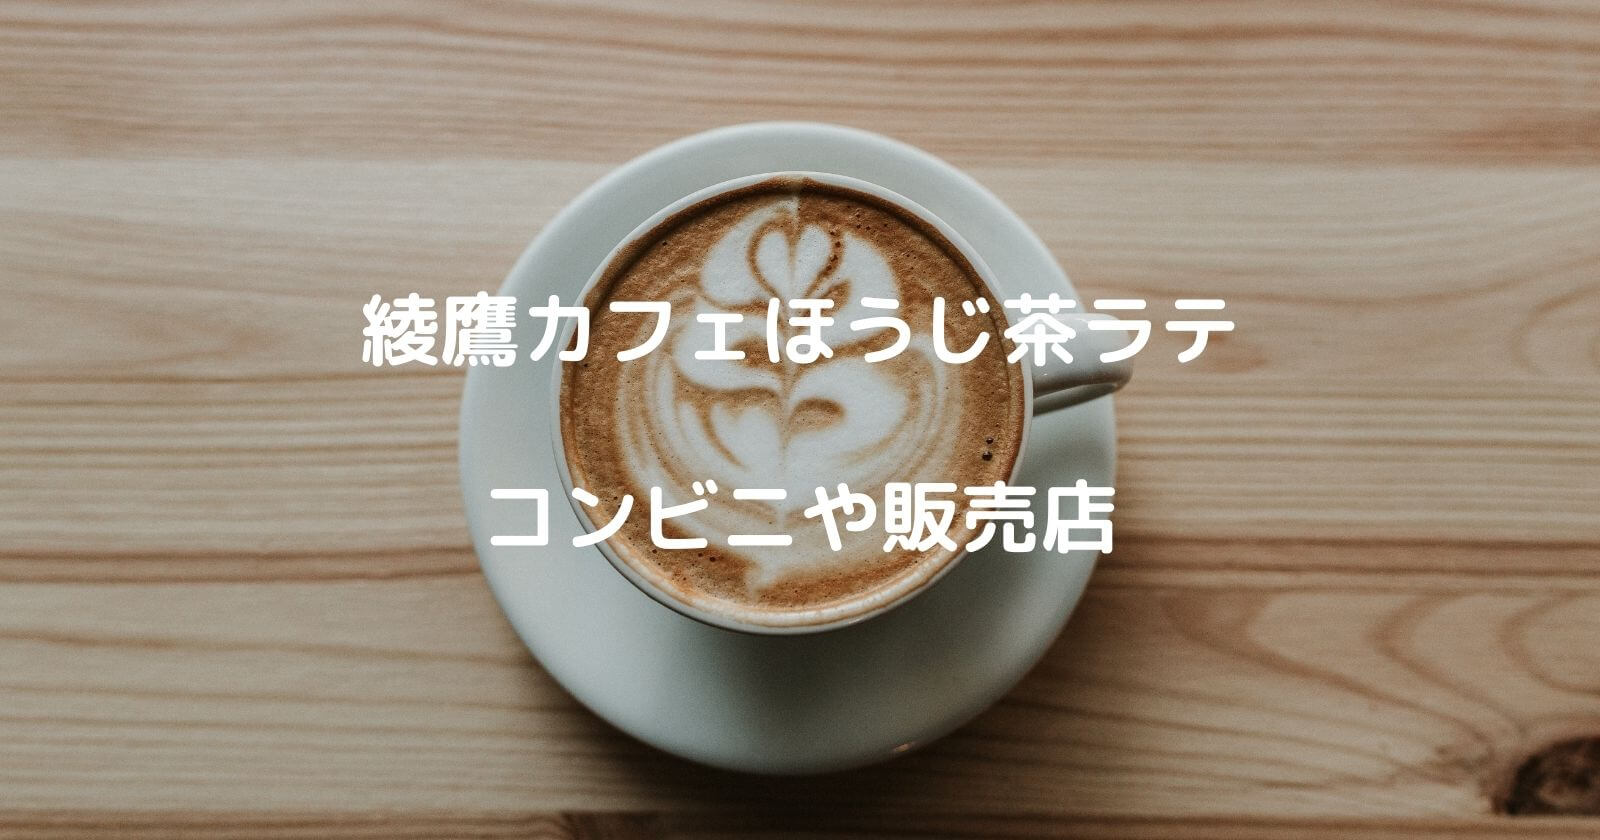 綾鷹カフェほうじ茶ラテのコンビニや販売店